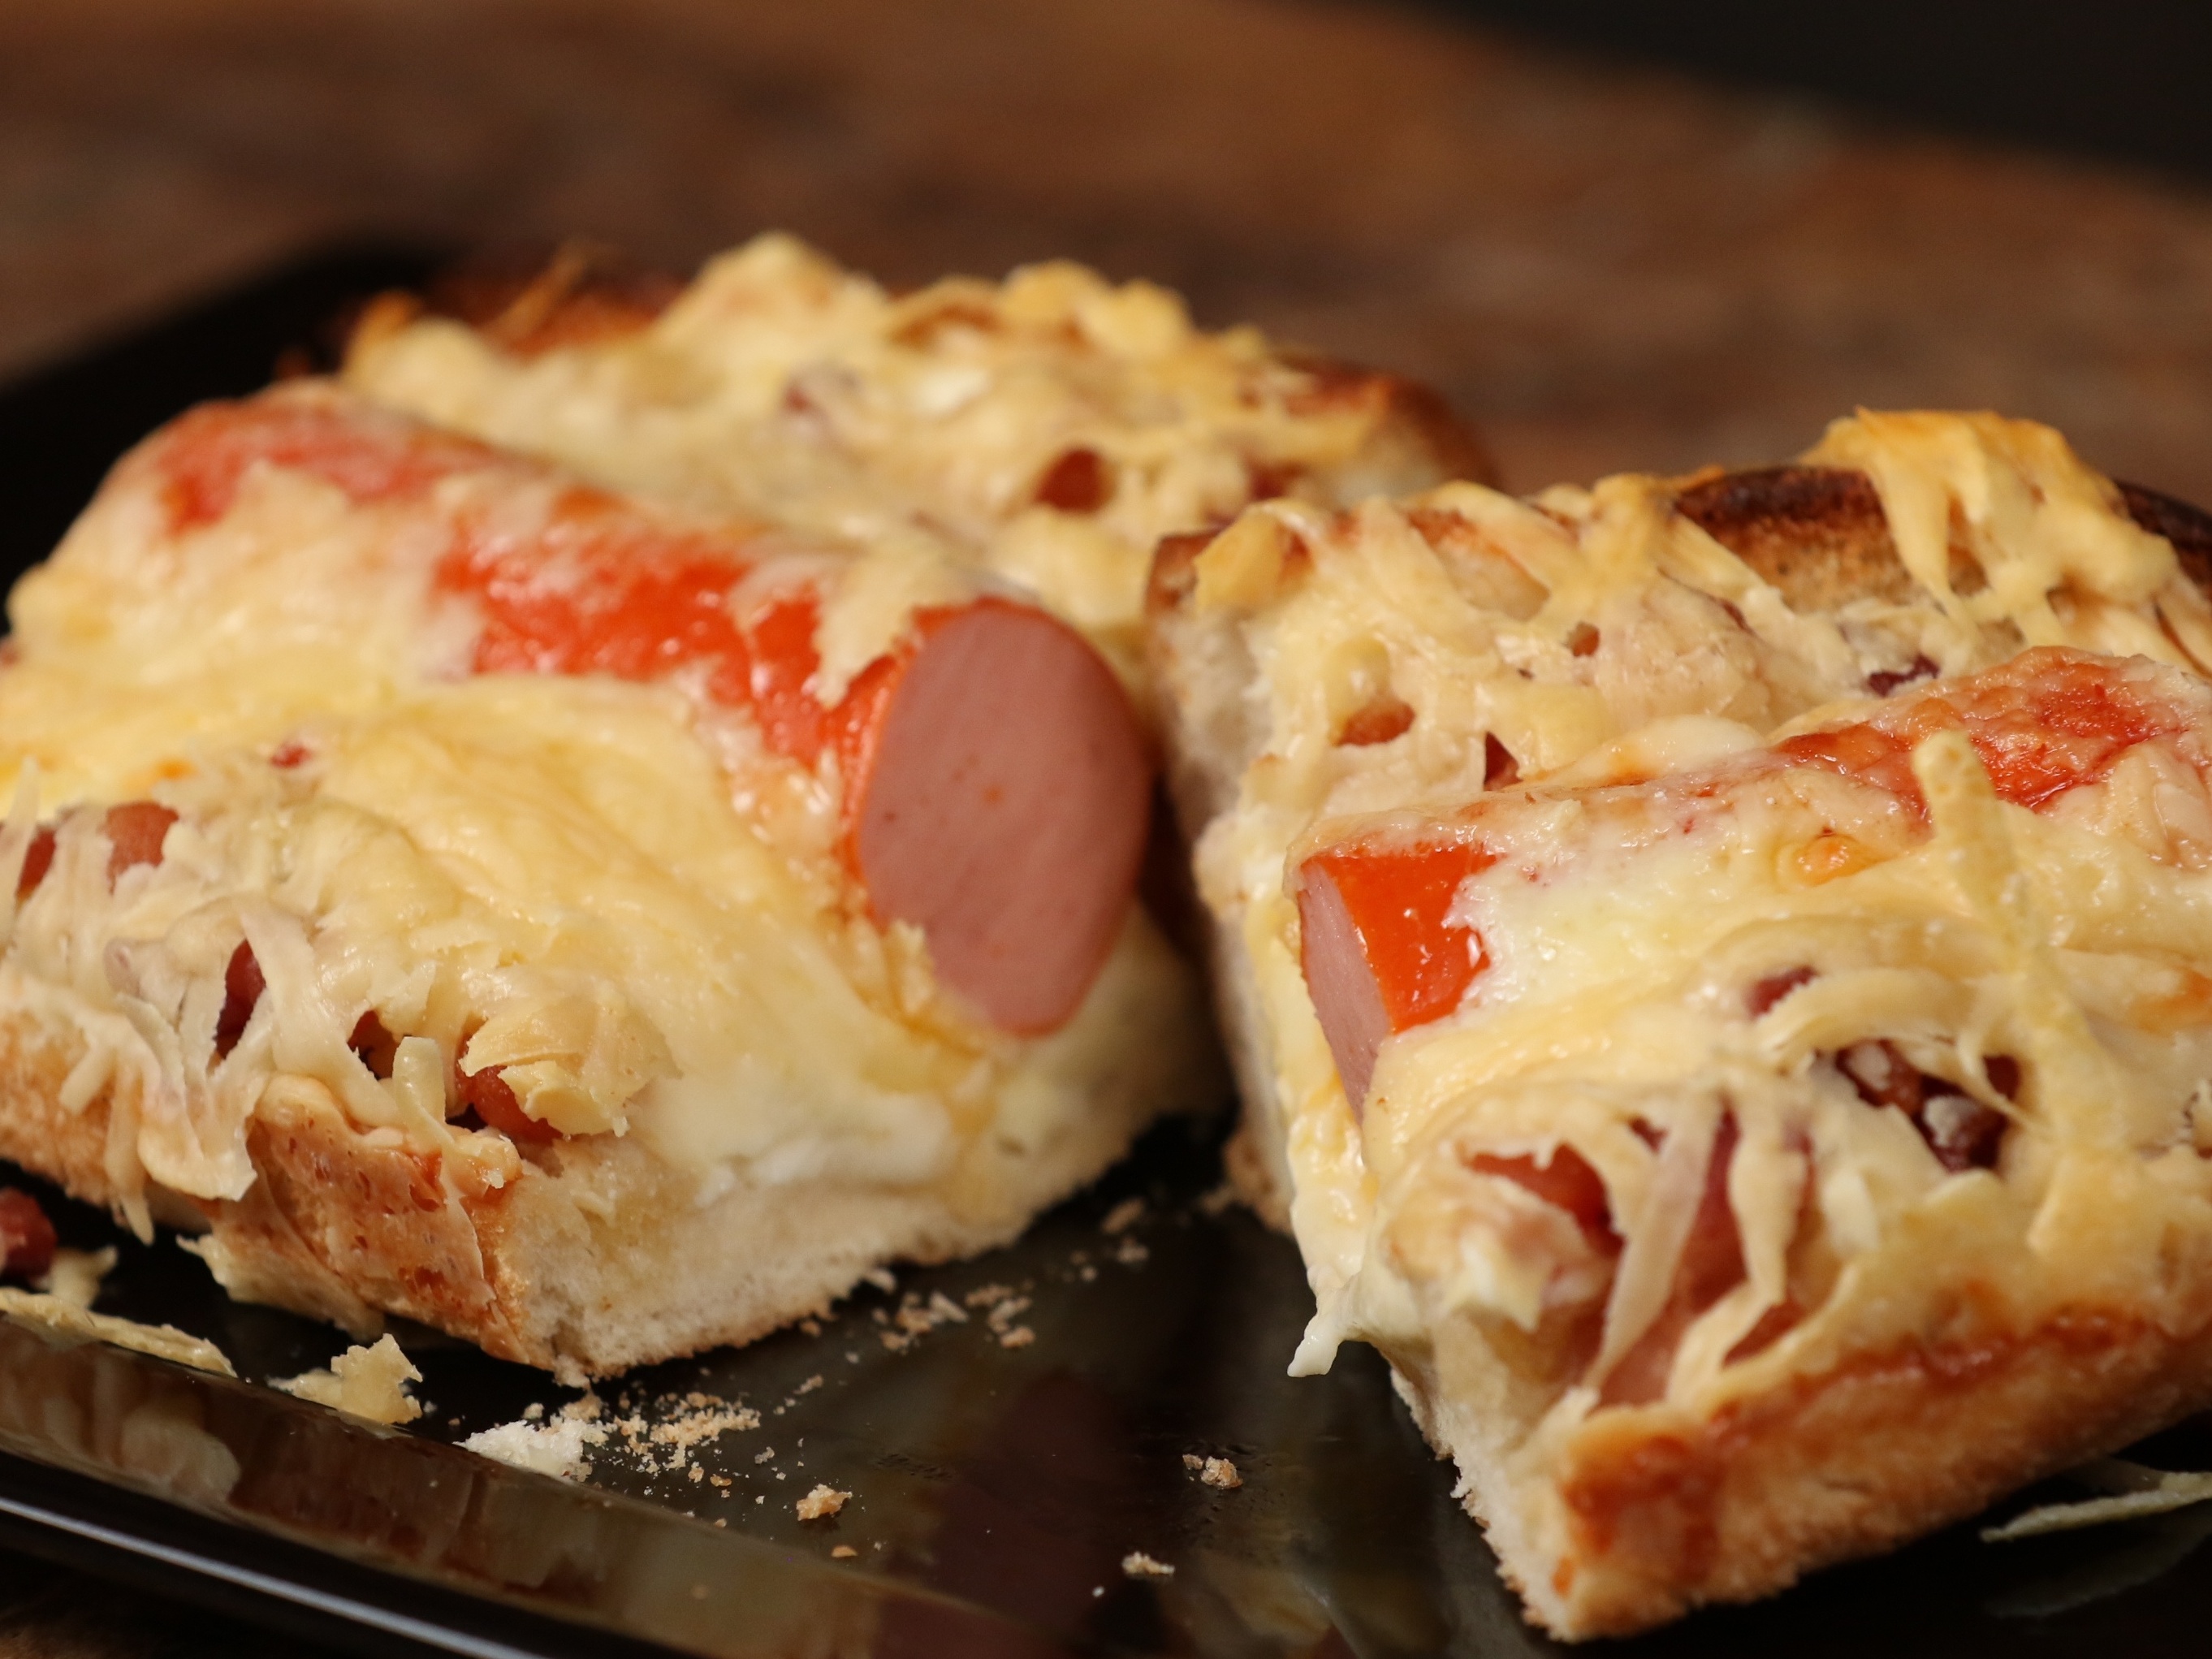 Cachorro-quente assado com massa de pão (hot dog sírio) ou